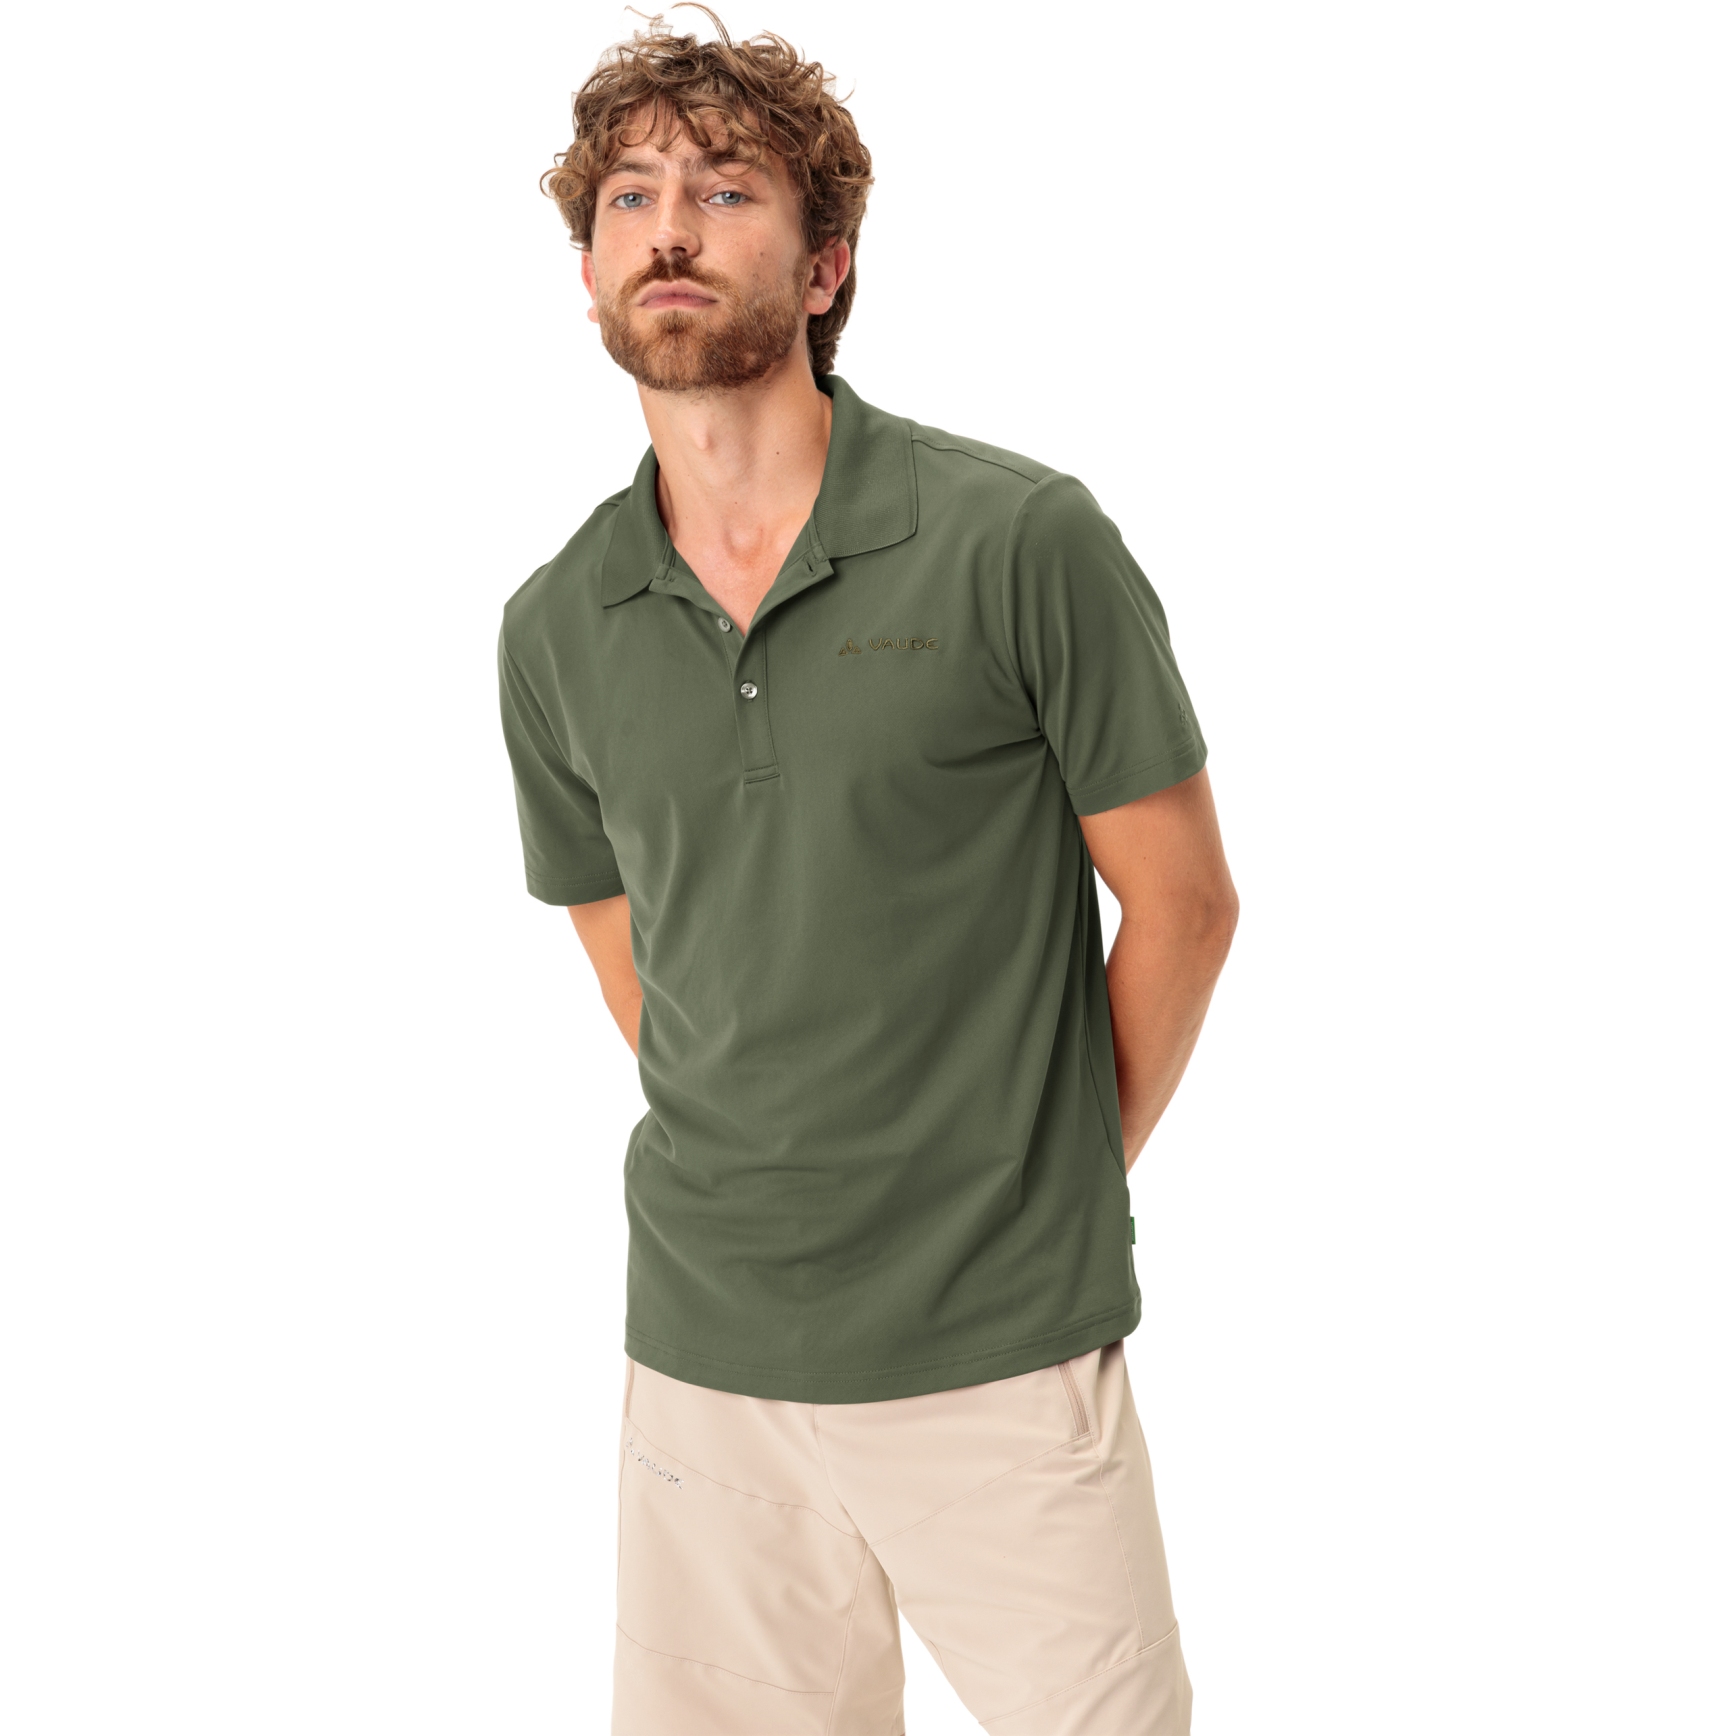 Produktbild von Vaude Essential Polo Shirt Herren - cedar wood